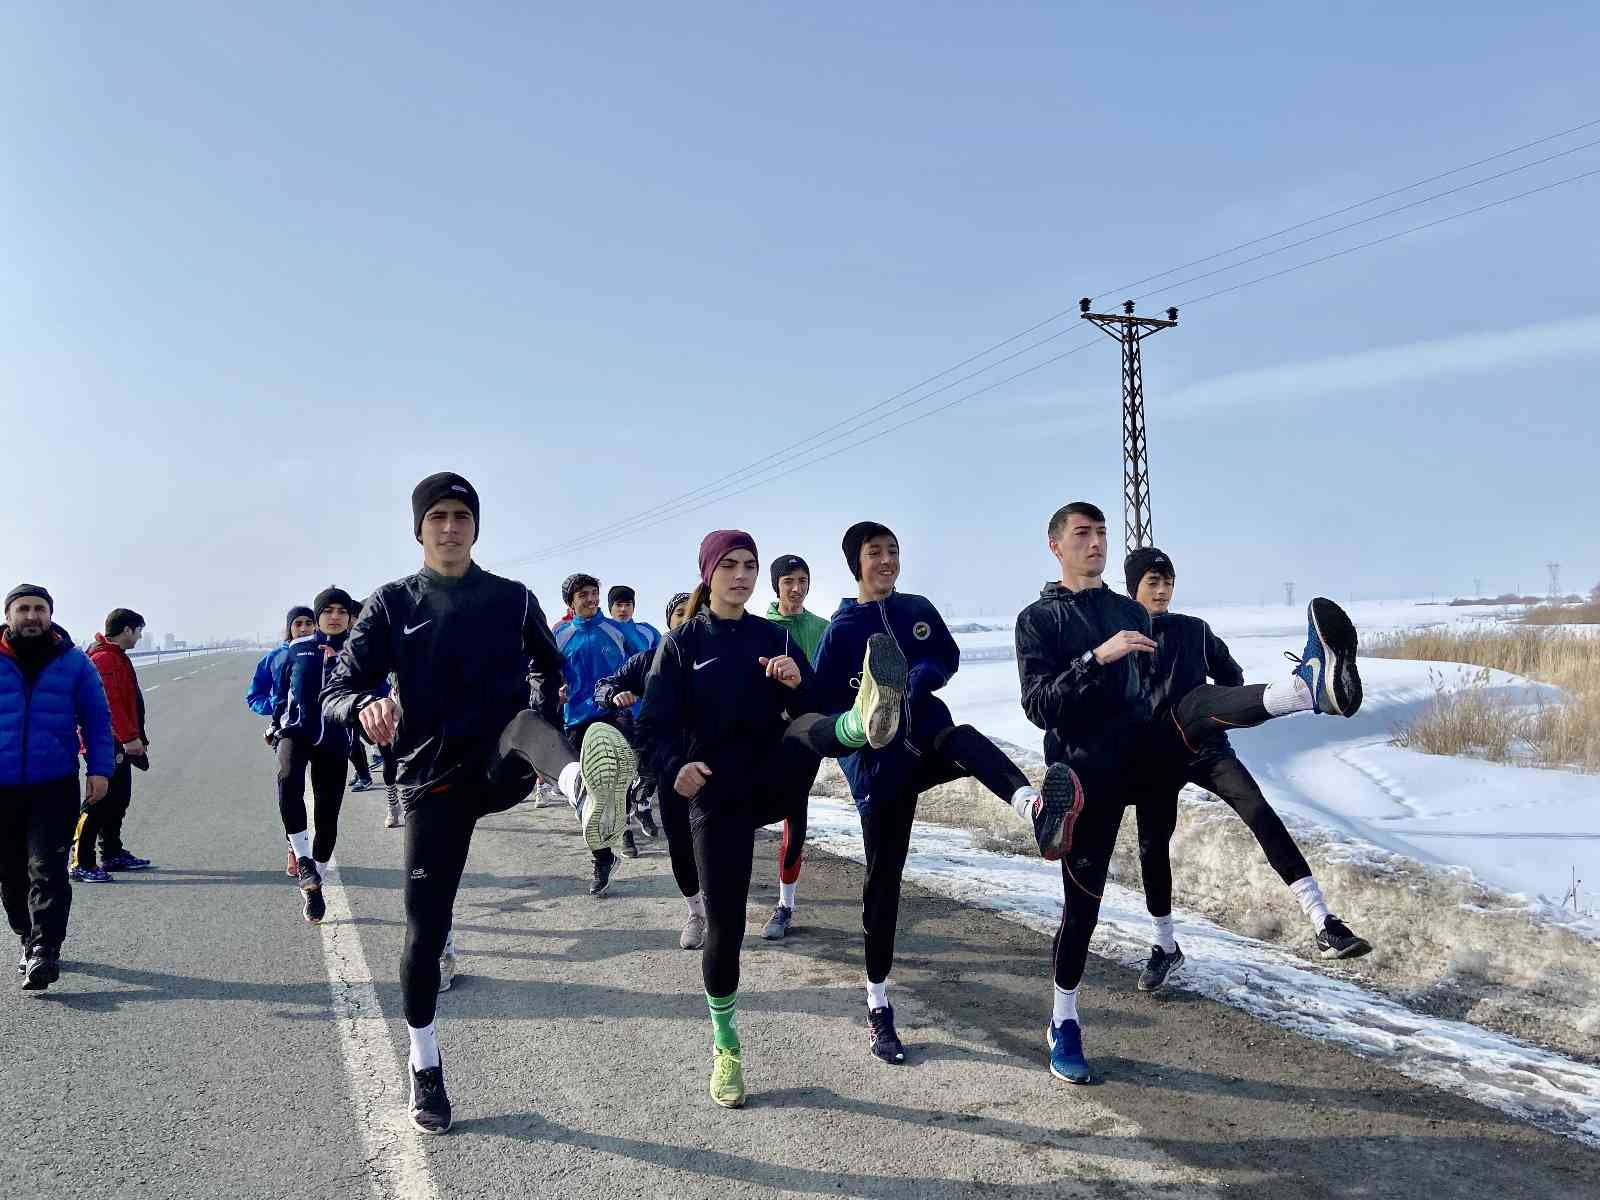 Ağrılı atletler asfaltta ter dökerek hedeflerine koşuyor #agri